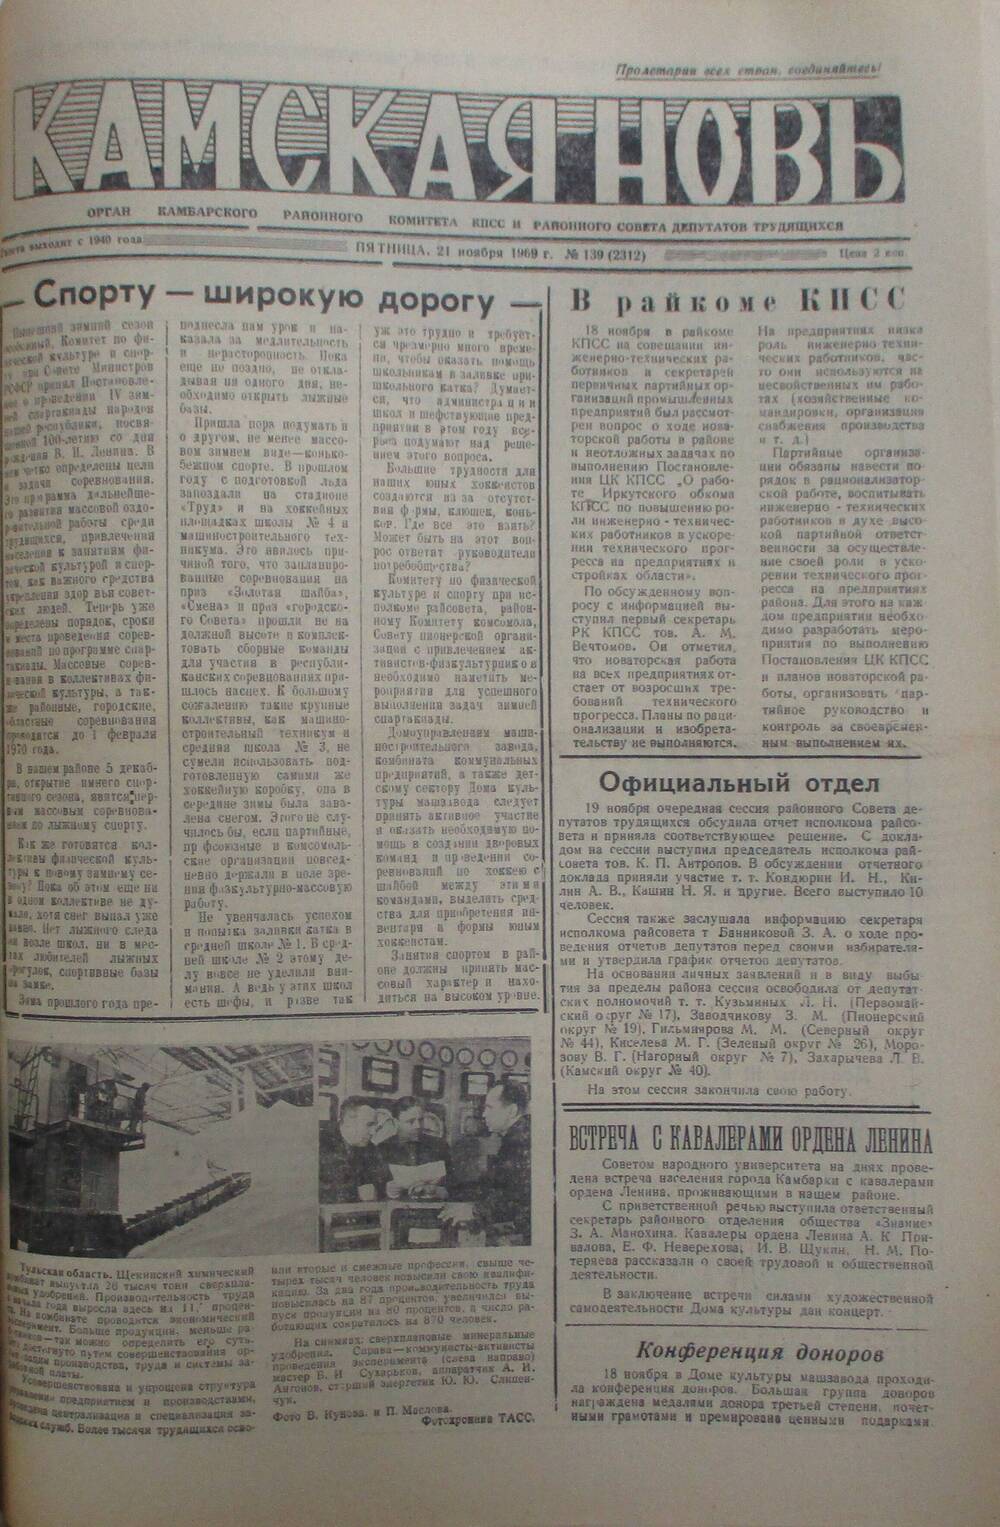 Газеты Камская новь за 1969 год, орган Камбарского райсовета и  РККПСС, с №1 по №66, с №68 по №156. №139.